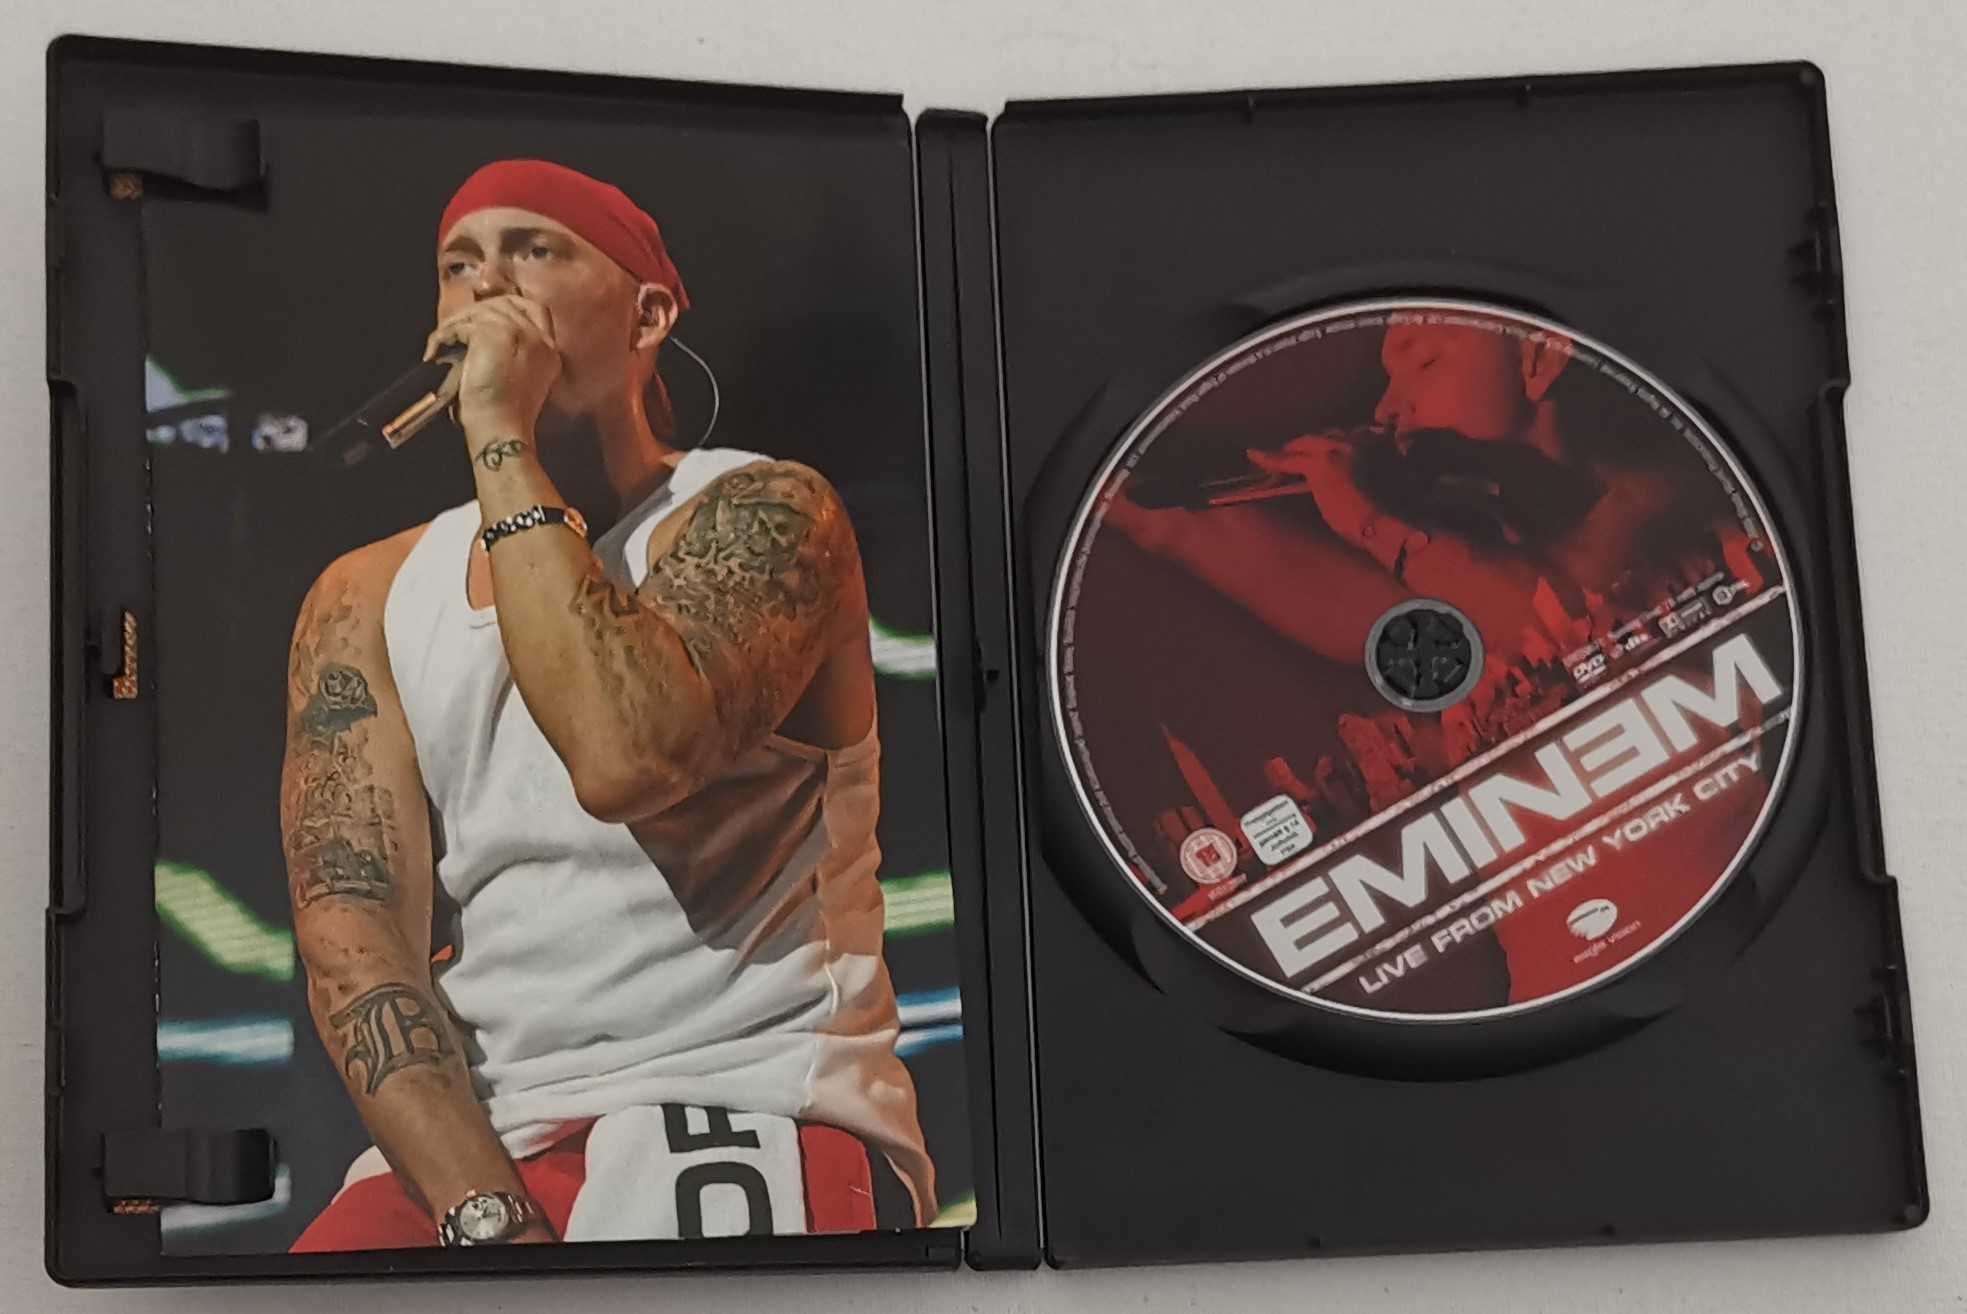 Eminem – Live From New York City, DVD